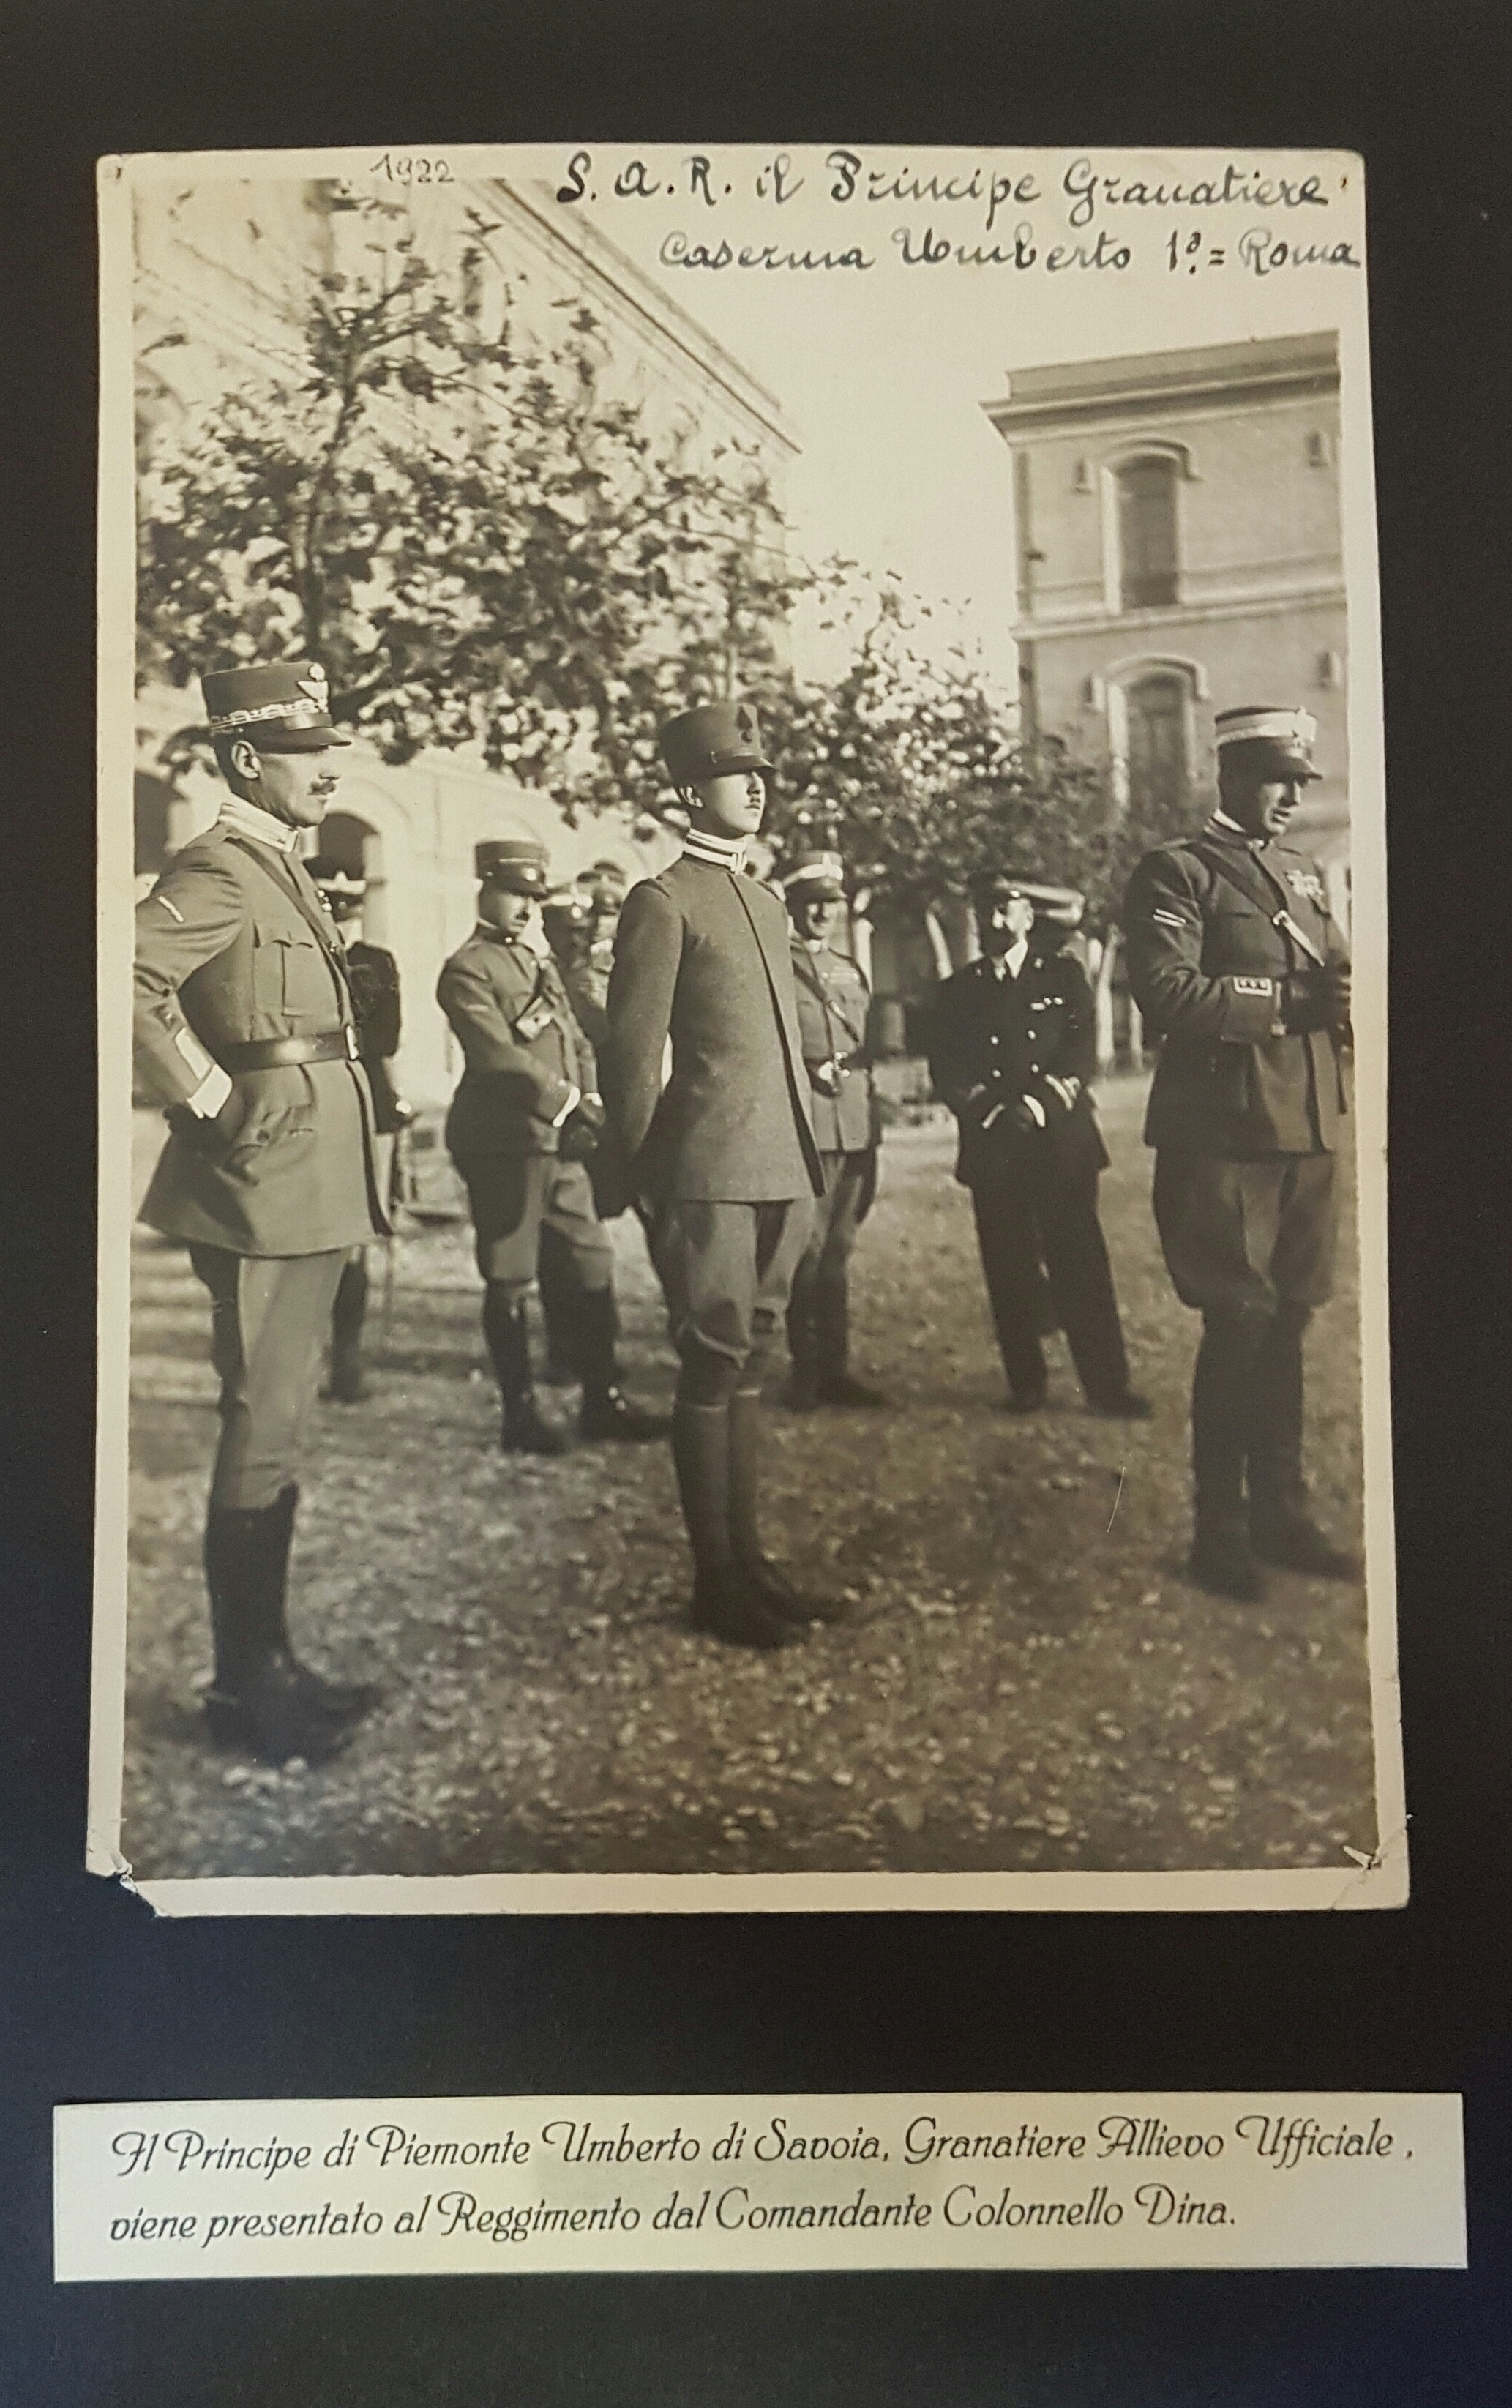 Il Principe di Piemonte Umberto di Savoia, allievo ufficiale, viene presentato al reggimento